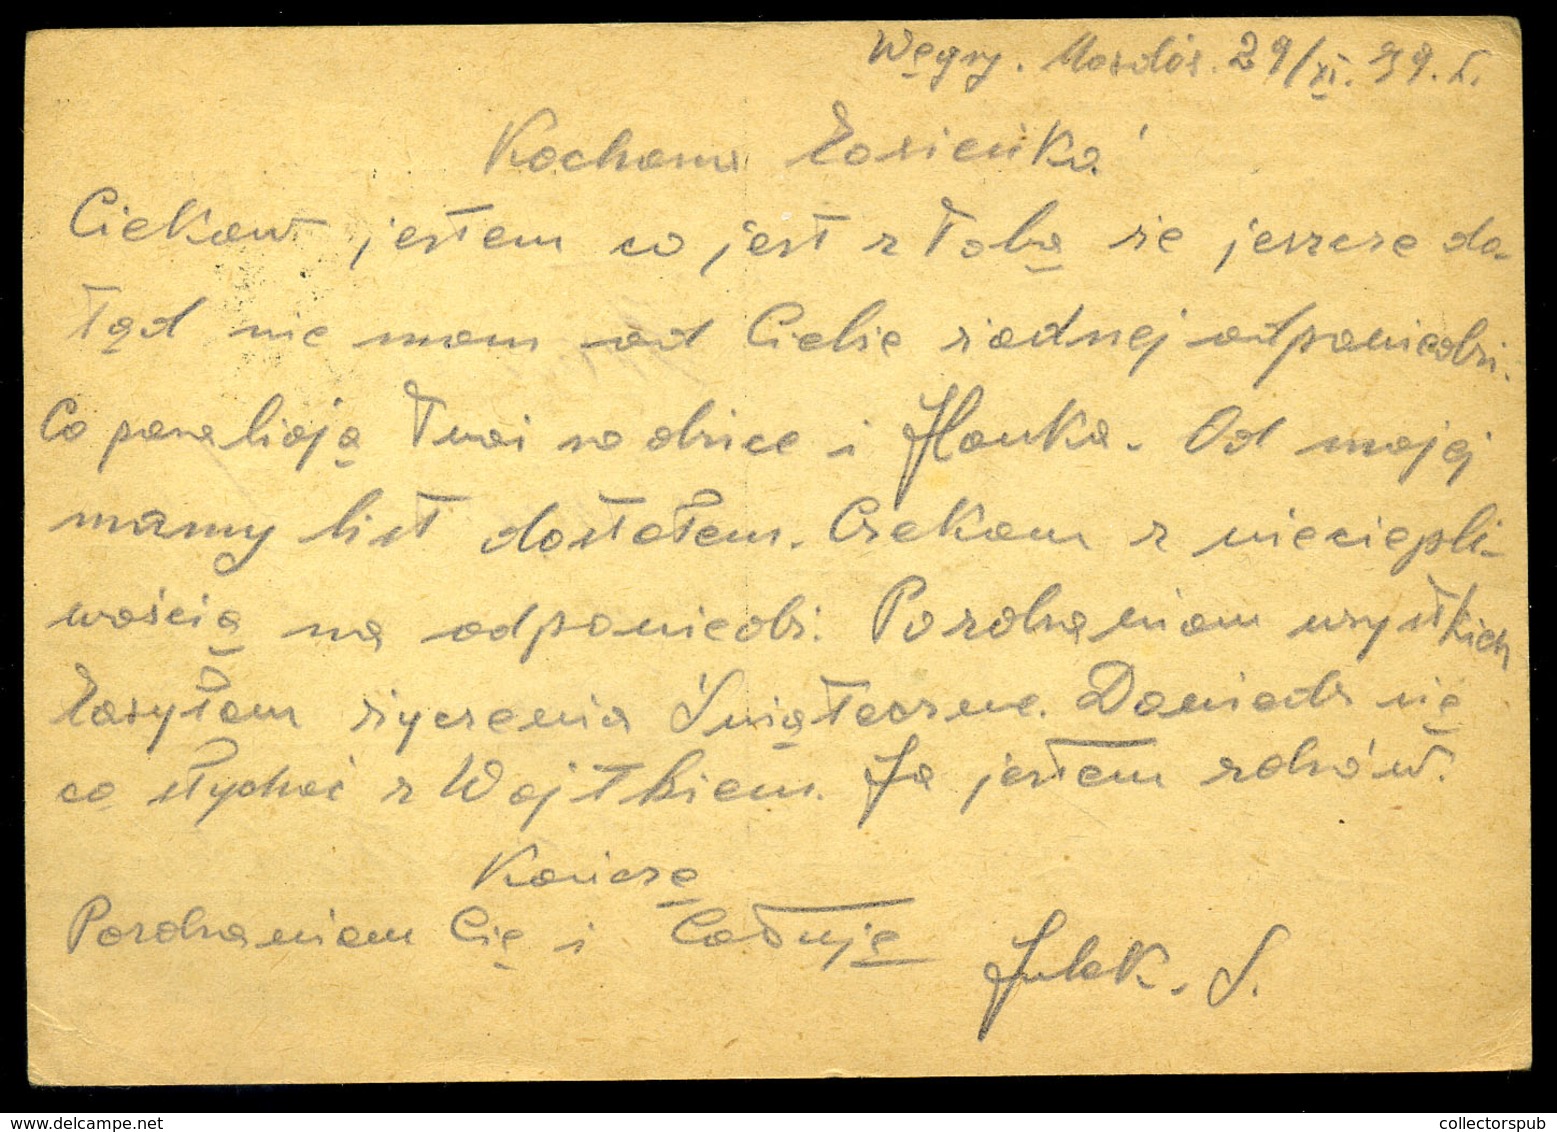 MOSDÓS 1939. Cenzúrázott Levlap Lengyel Internáló Táborból Neu-Sandec-re Küldve  /  Cens. P.card From Polish  Internment - Lettres & Documents